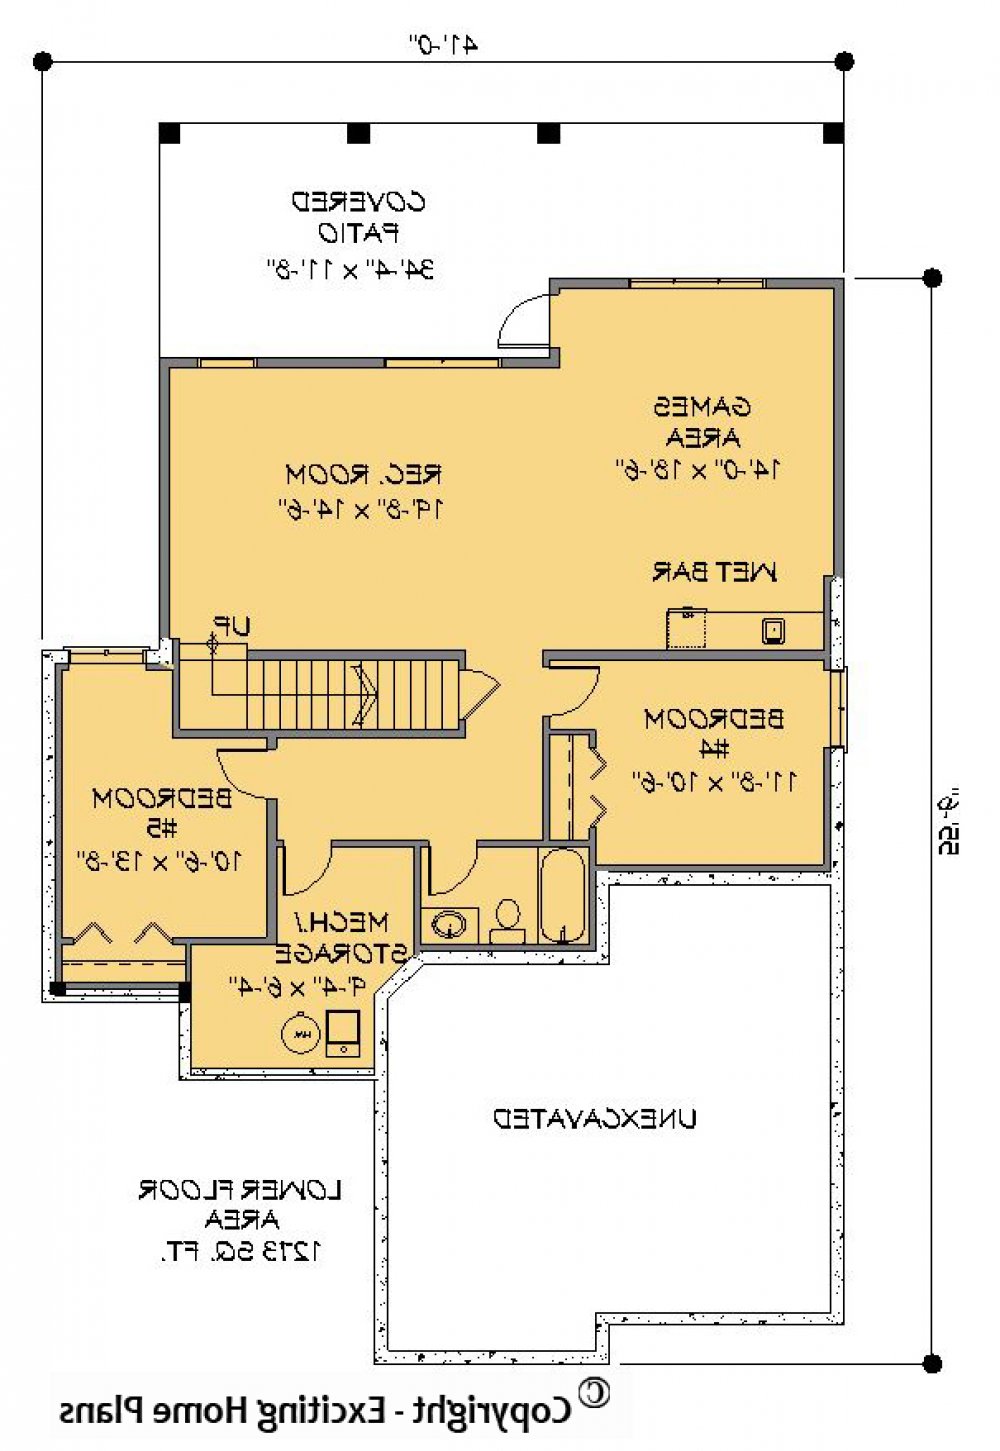 House Plan E1203-10 Lower Floor Plan REVERSE